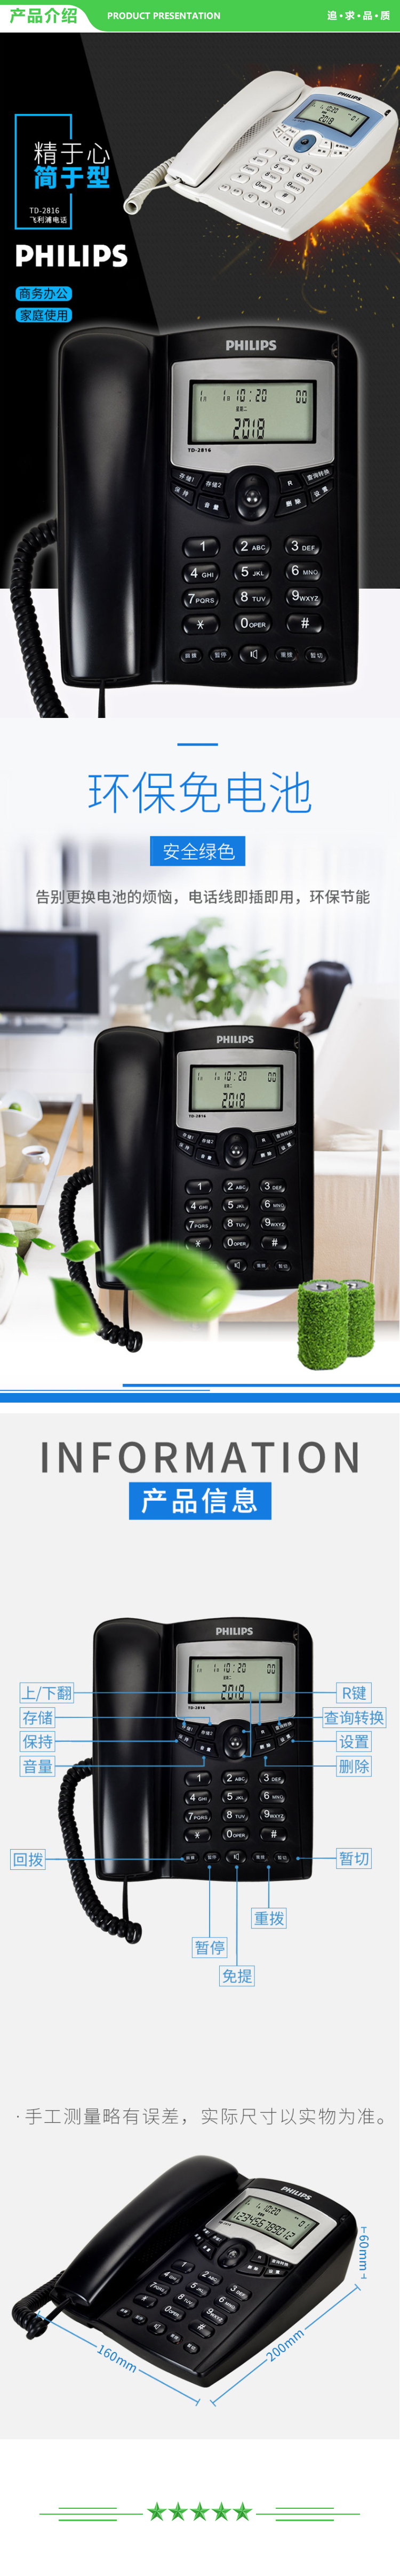 飞利浦 PHILIPS TD-2816 电话机座机 固定电话 办公家用 免电池 来电显示 双插孔 (白色) .jpg